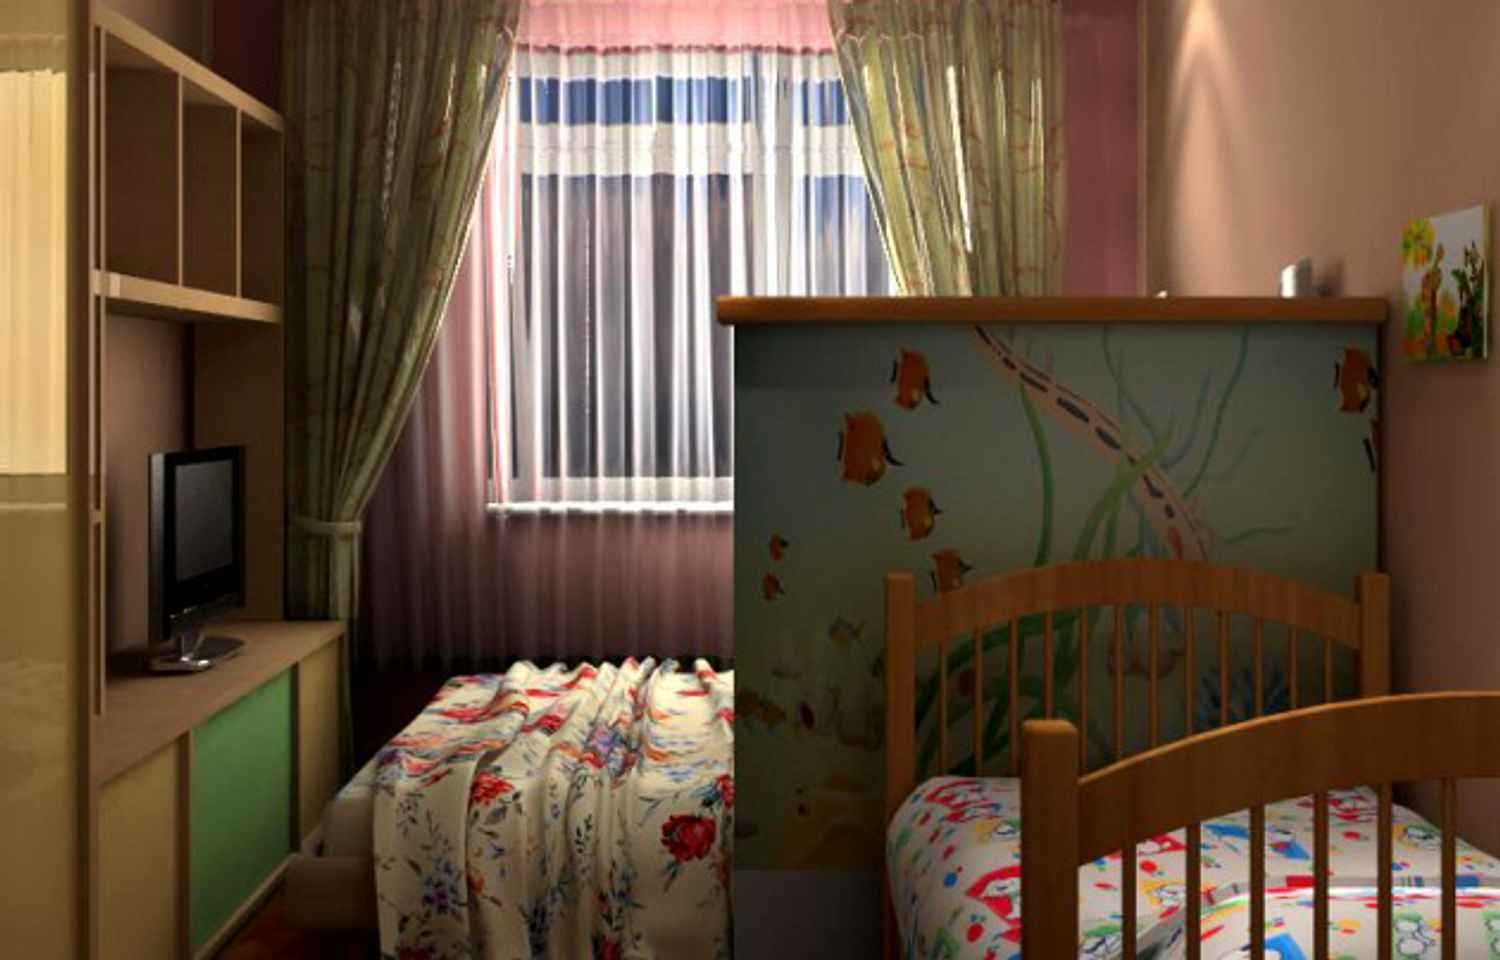 Дизайн спальни с детской кроваткой: размеры комнаты, ниша под уголок малыша, решения для однокомнатной квартиры